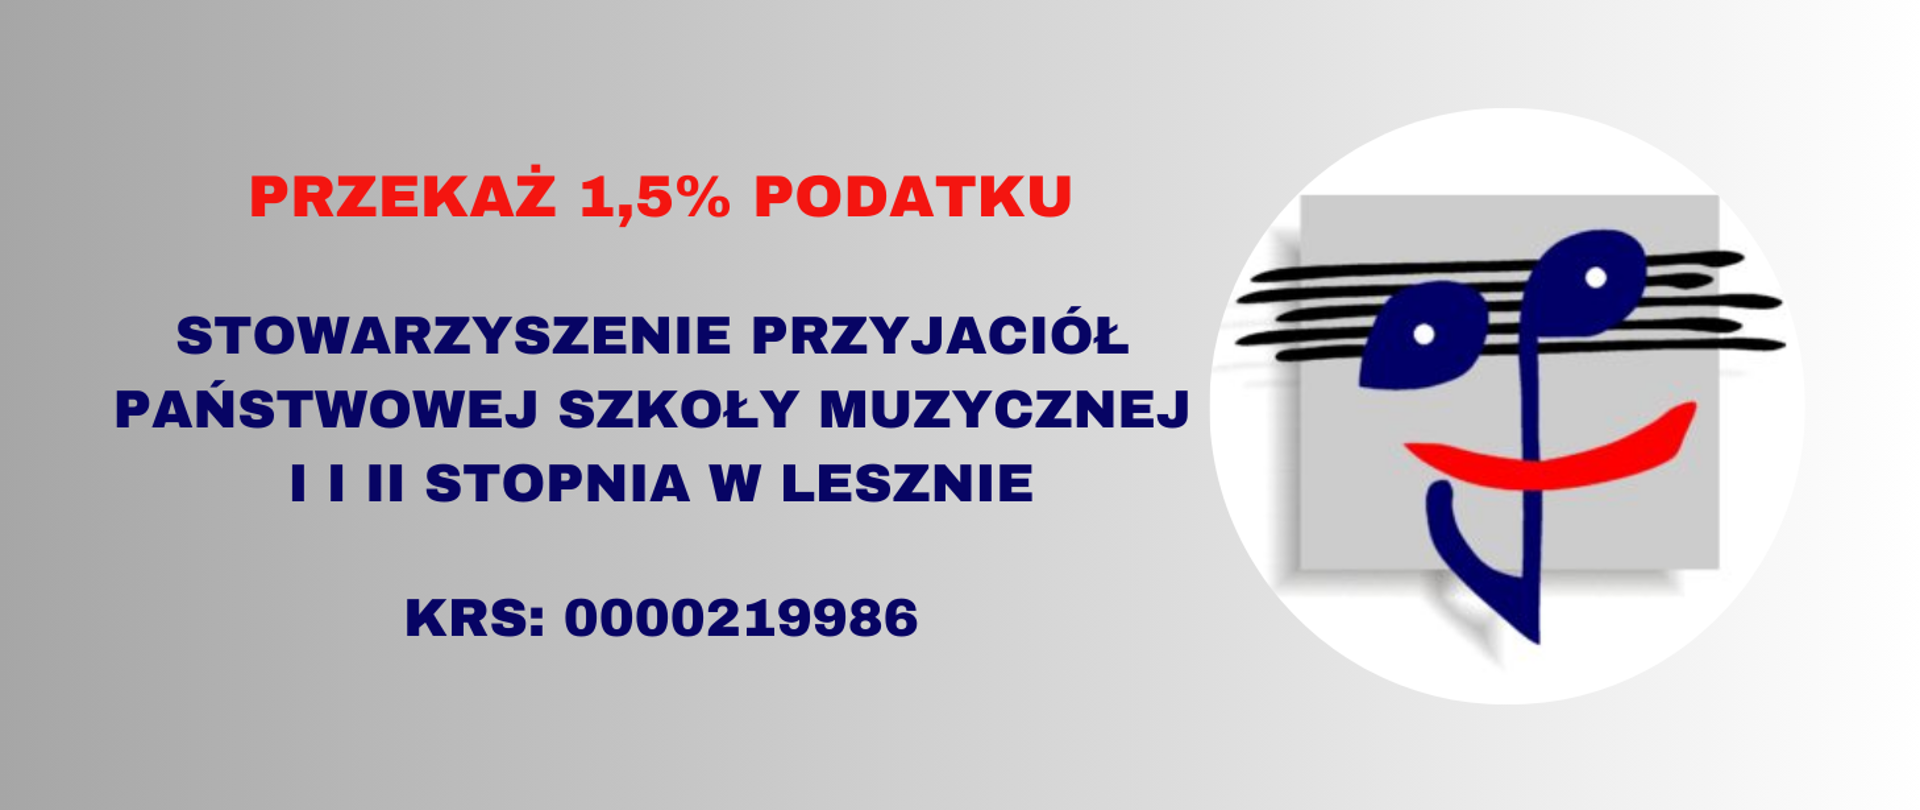 Plakat na jasnoniebieskim tle z czerwonymi i granatowymi napisami. Po prawej logo Stowarzyszenia Przyjaciół Państwowej Szkoły Muzycznej w Lesznie.